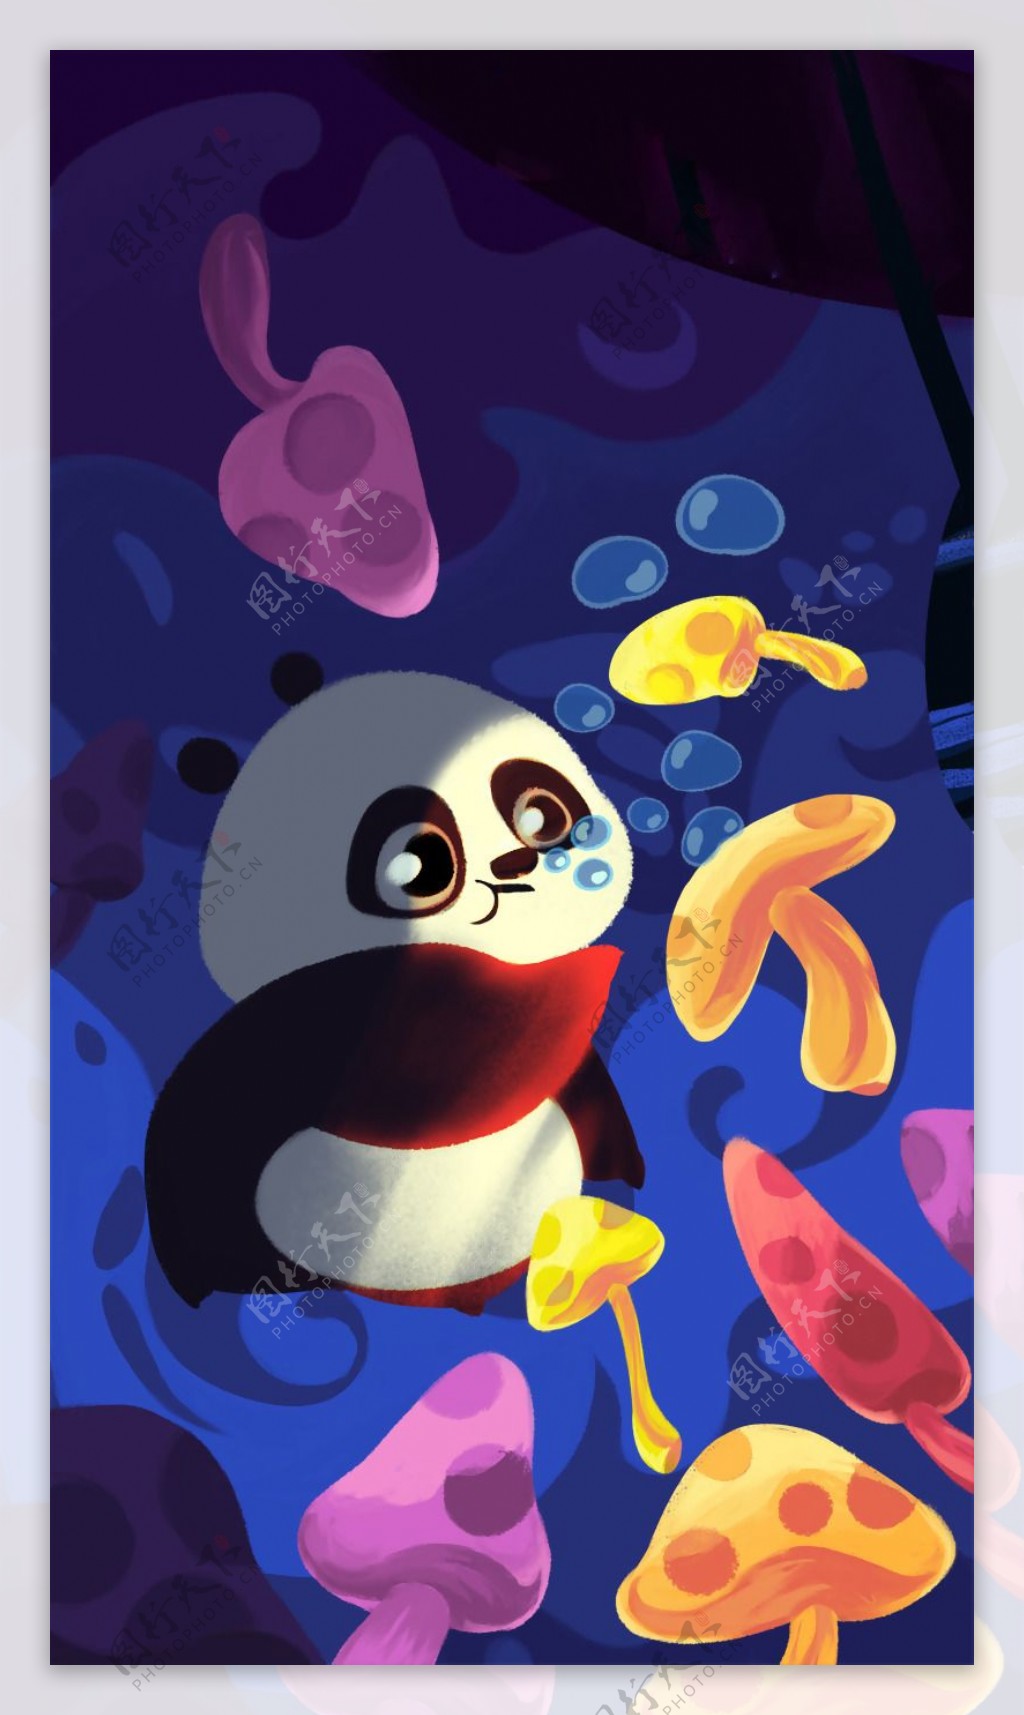 位图插画师simoninn中国熊猫生活元素免费素材